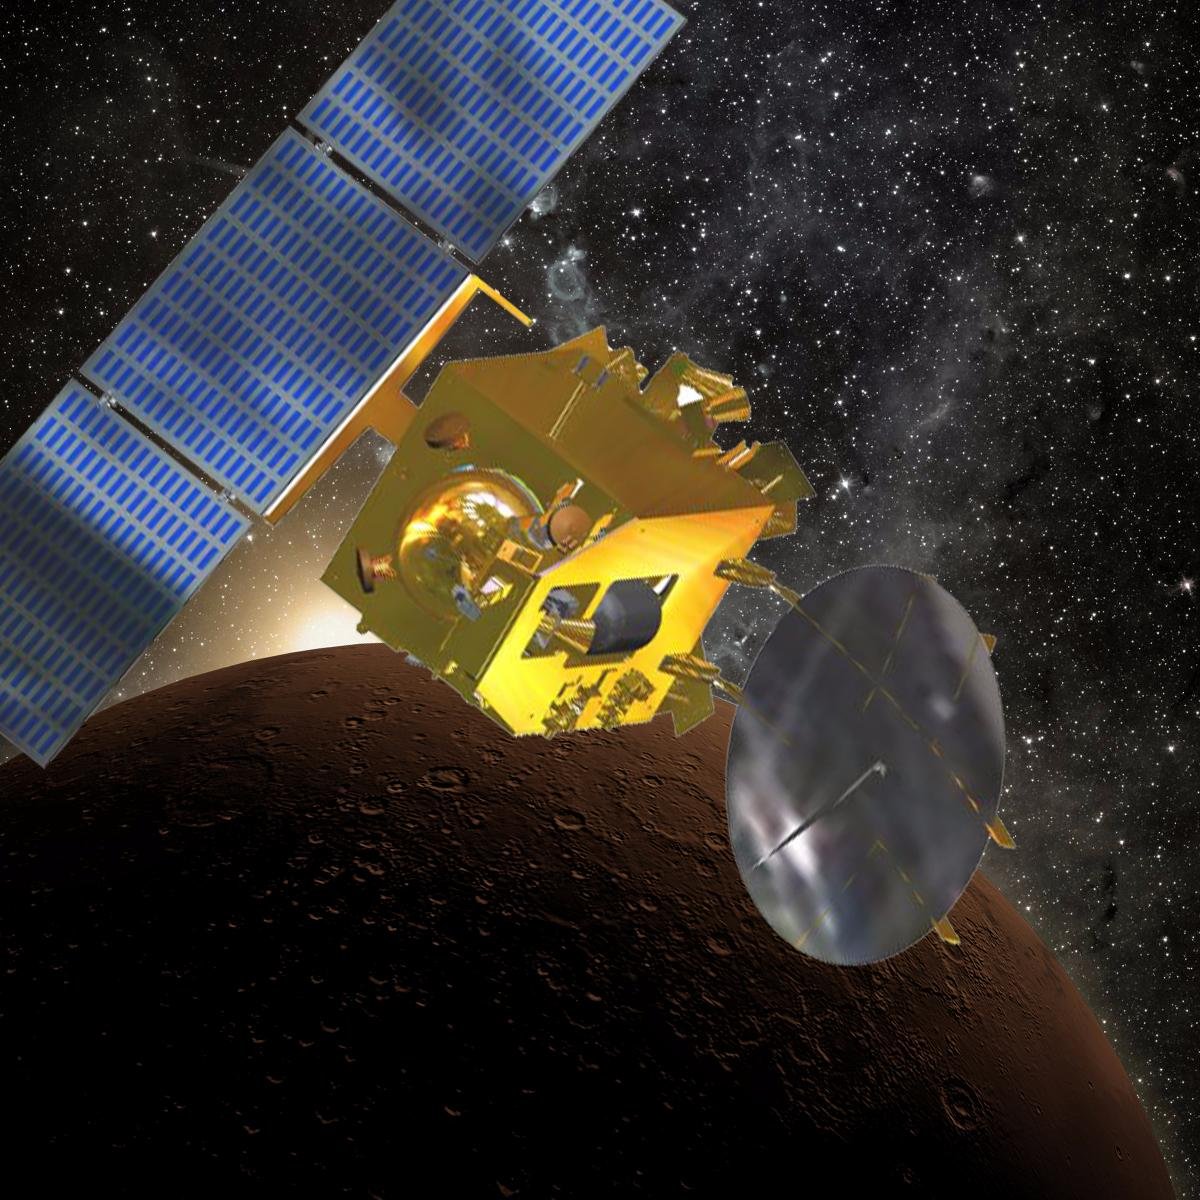 Mars Orbiter